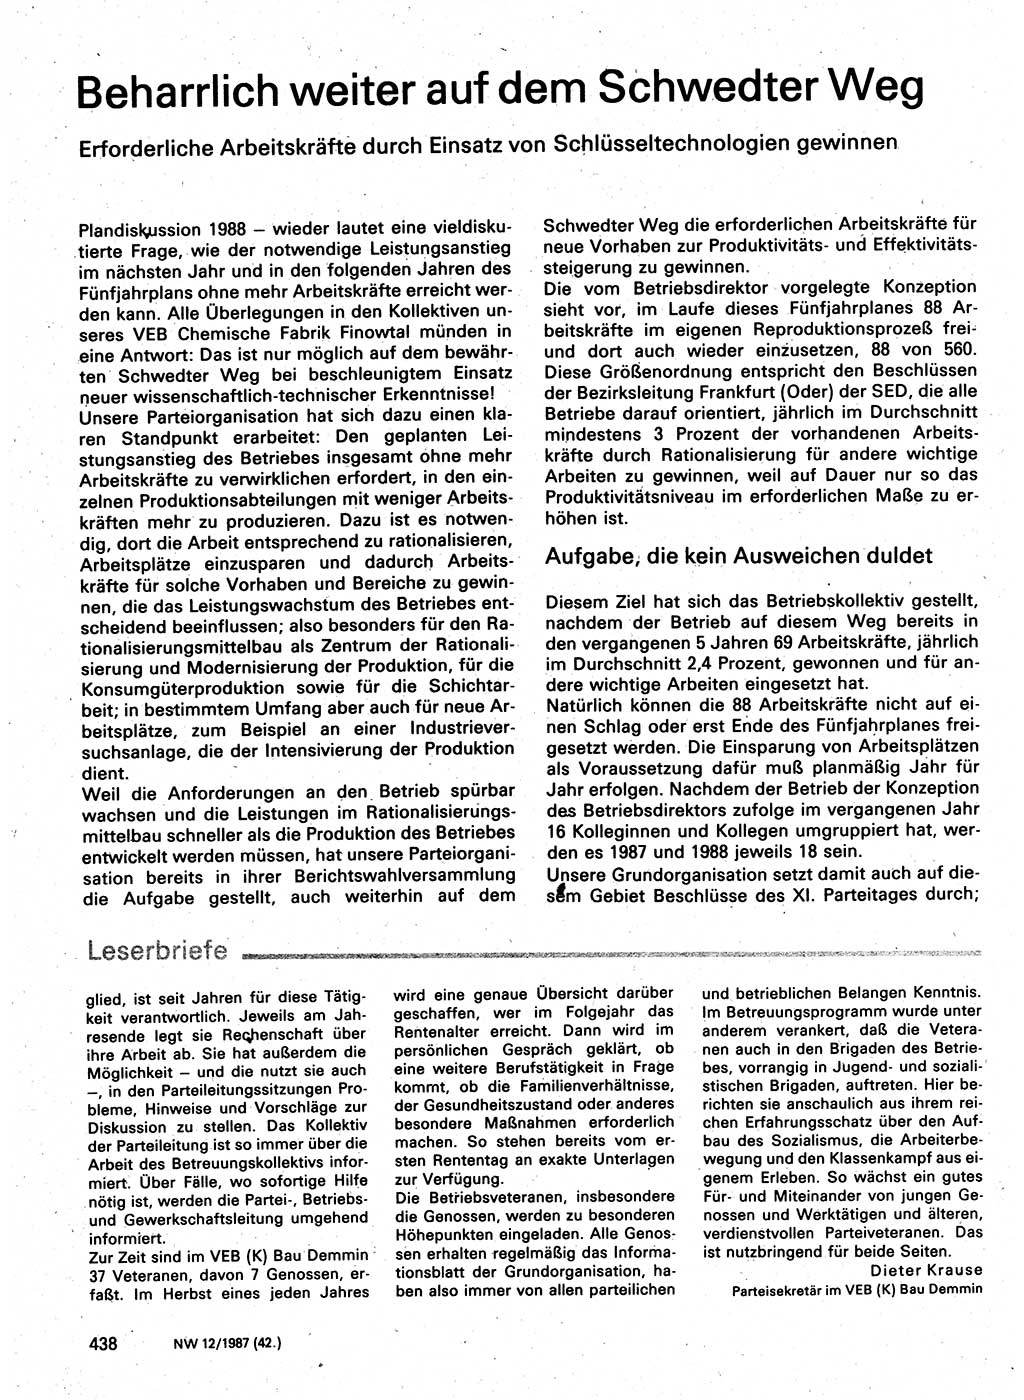 Neuer Weg (NW), Organ des Zentralkomitees (ZK) der SED (Sozialistische Einheitspartei Deutschlands) für Fragen des Parteilebens, 42. Jahrgang [Deutsche Demokratische Republik (DDR)] 1987, Seite 427 (NW ZK SED DDR 1987, S. 427)